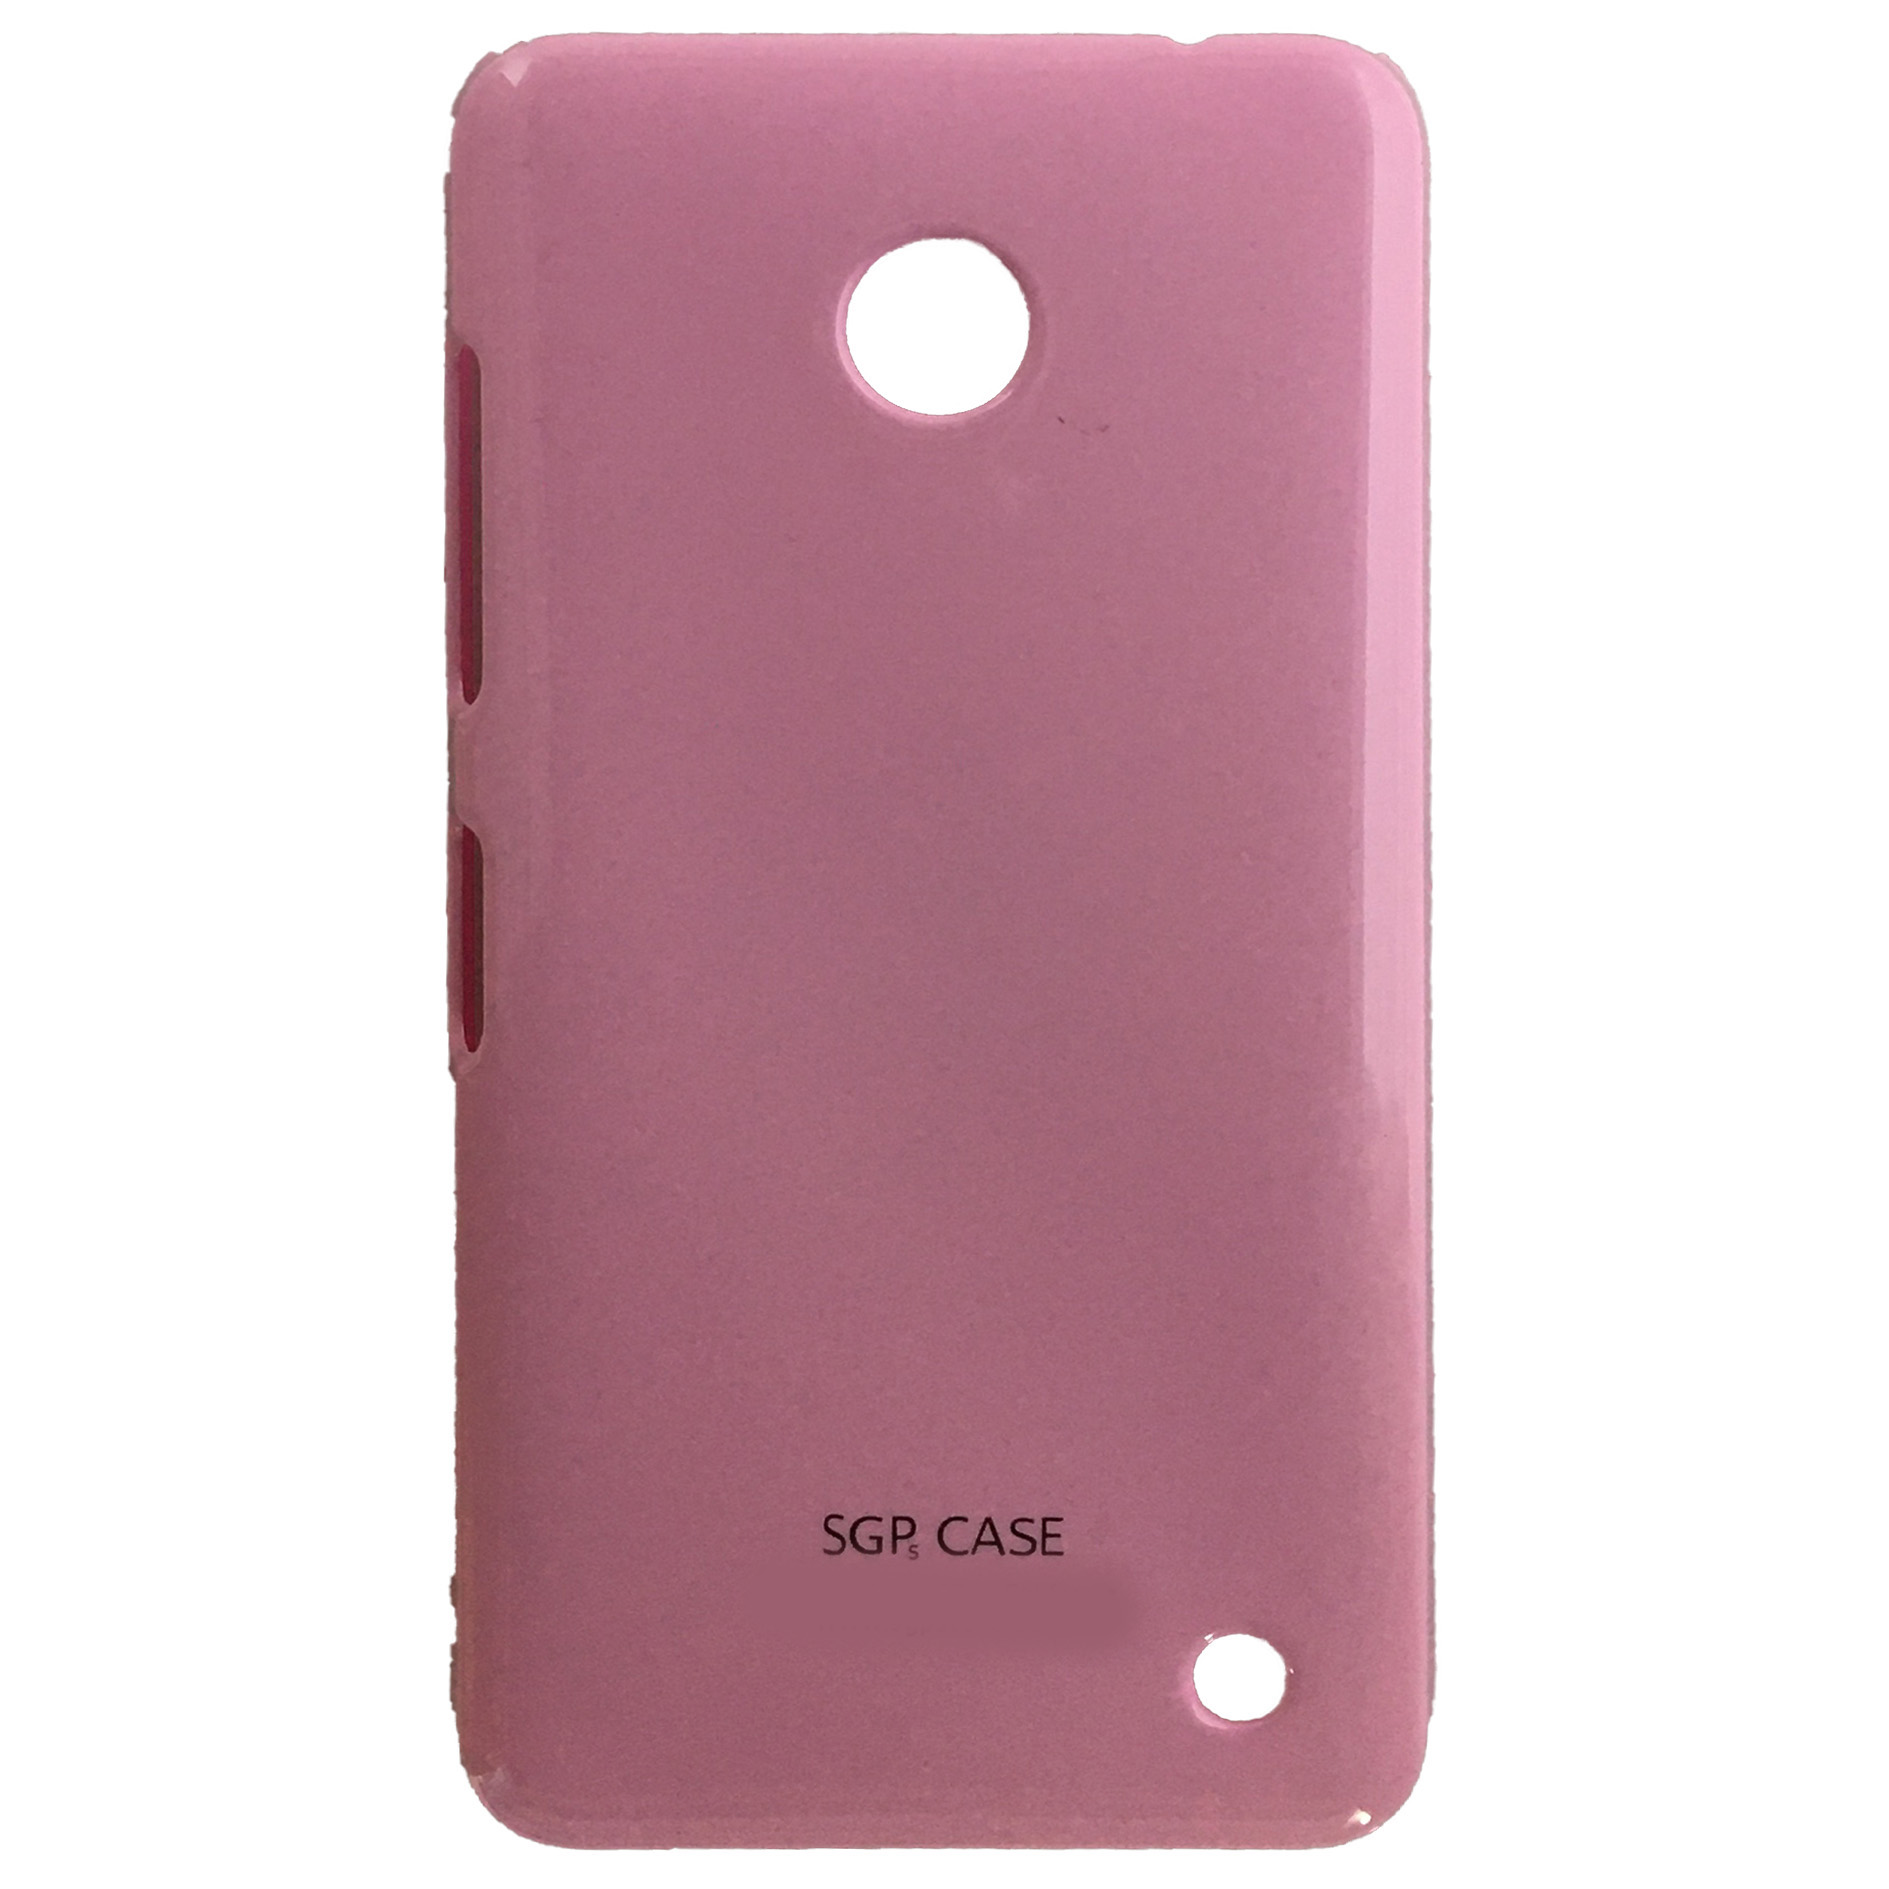 کاور اس جی پی مدل N630 مناسب برای گوشی موبایل نوکیا Lumia 630